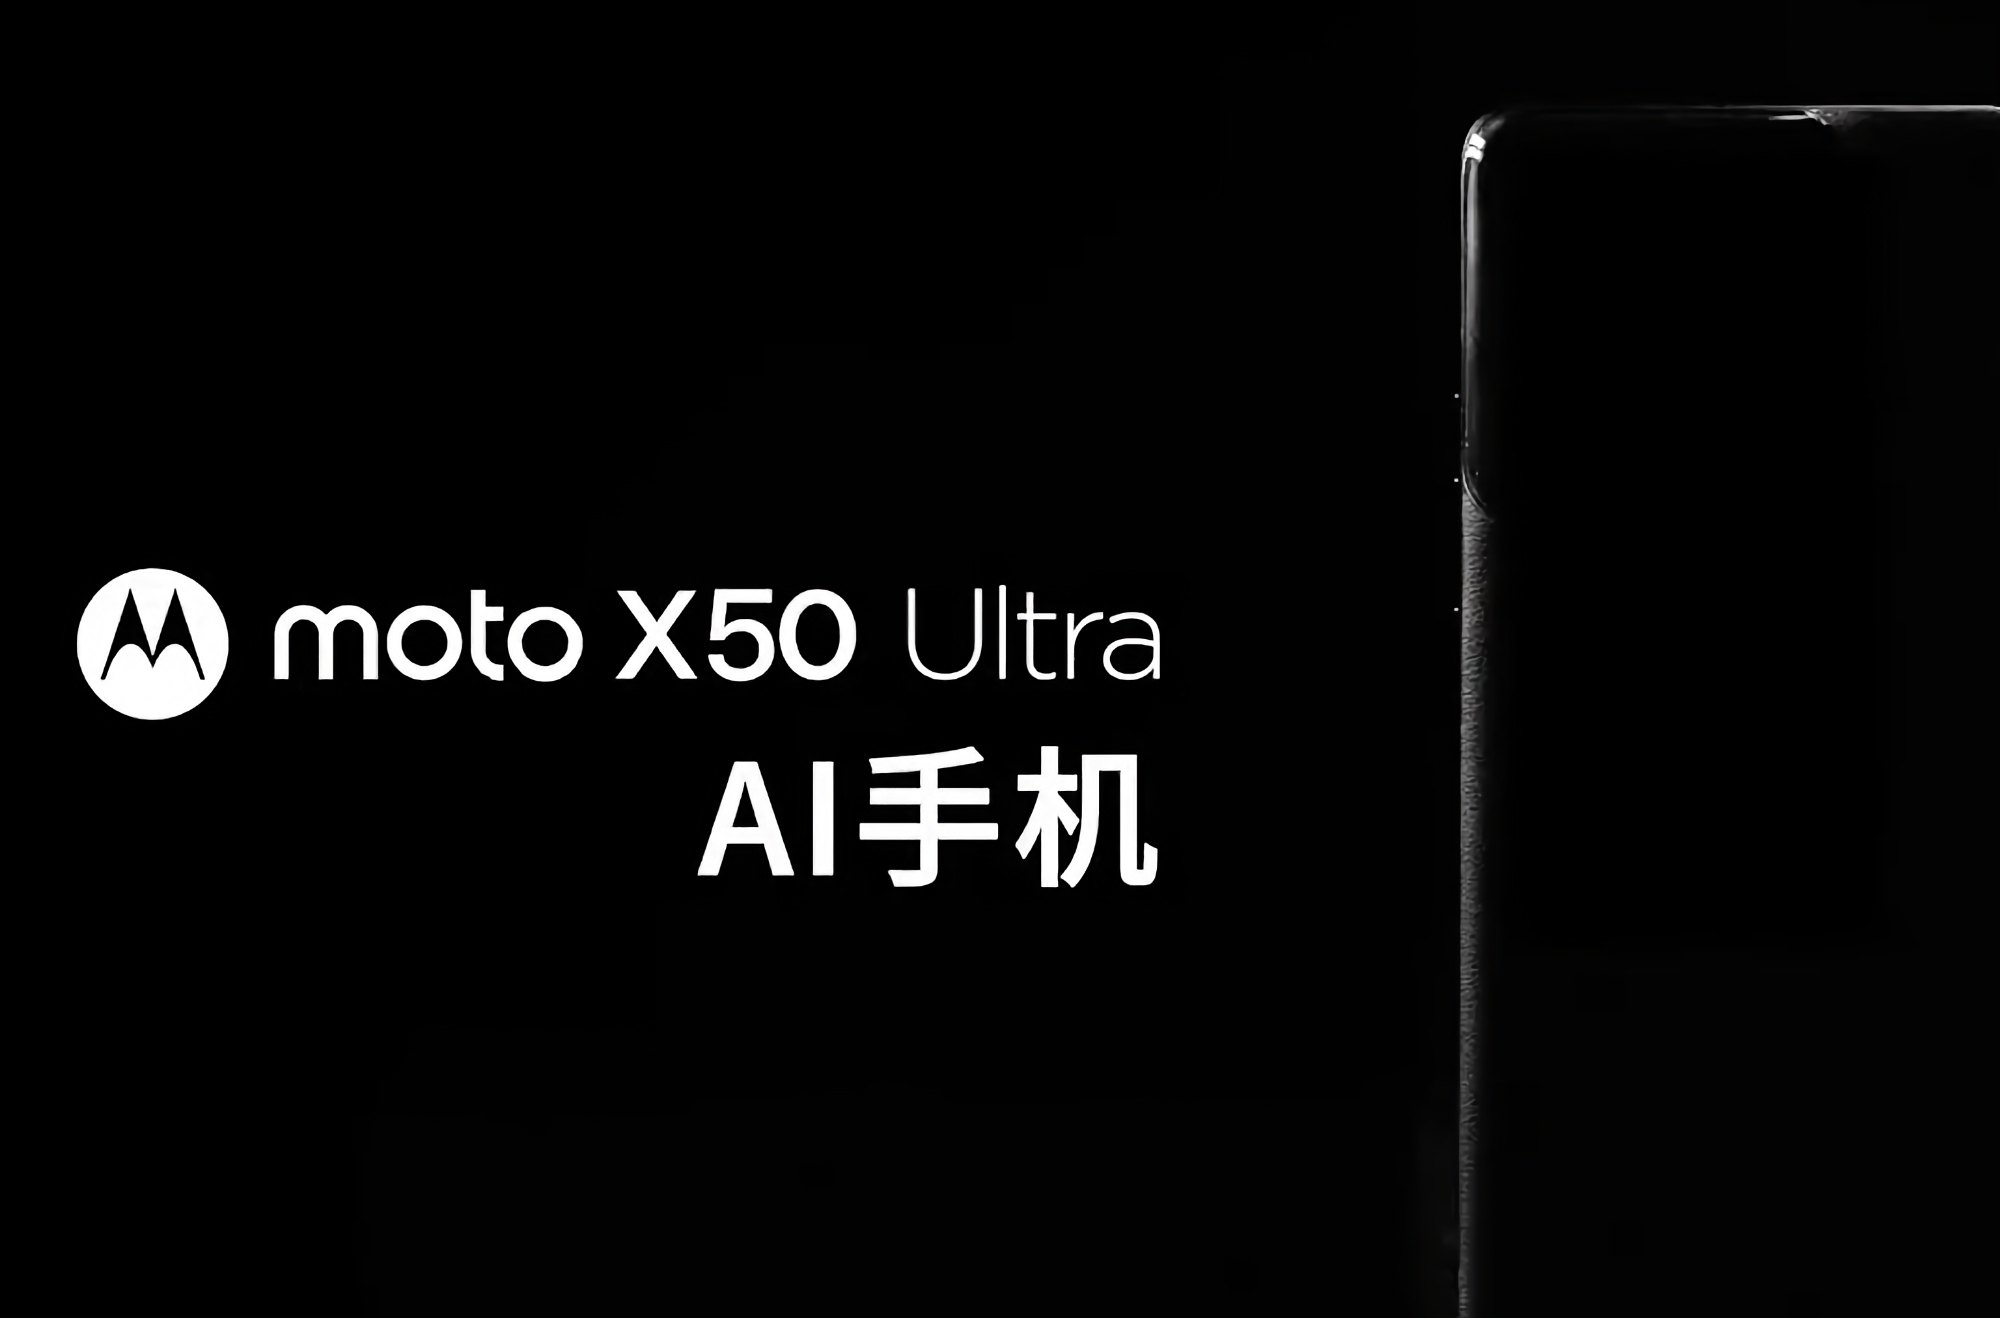 Офіційно: Motorola готує до виходу флагманський смартфон Moto X50 Ultra з функціями ШІ